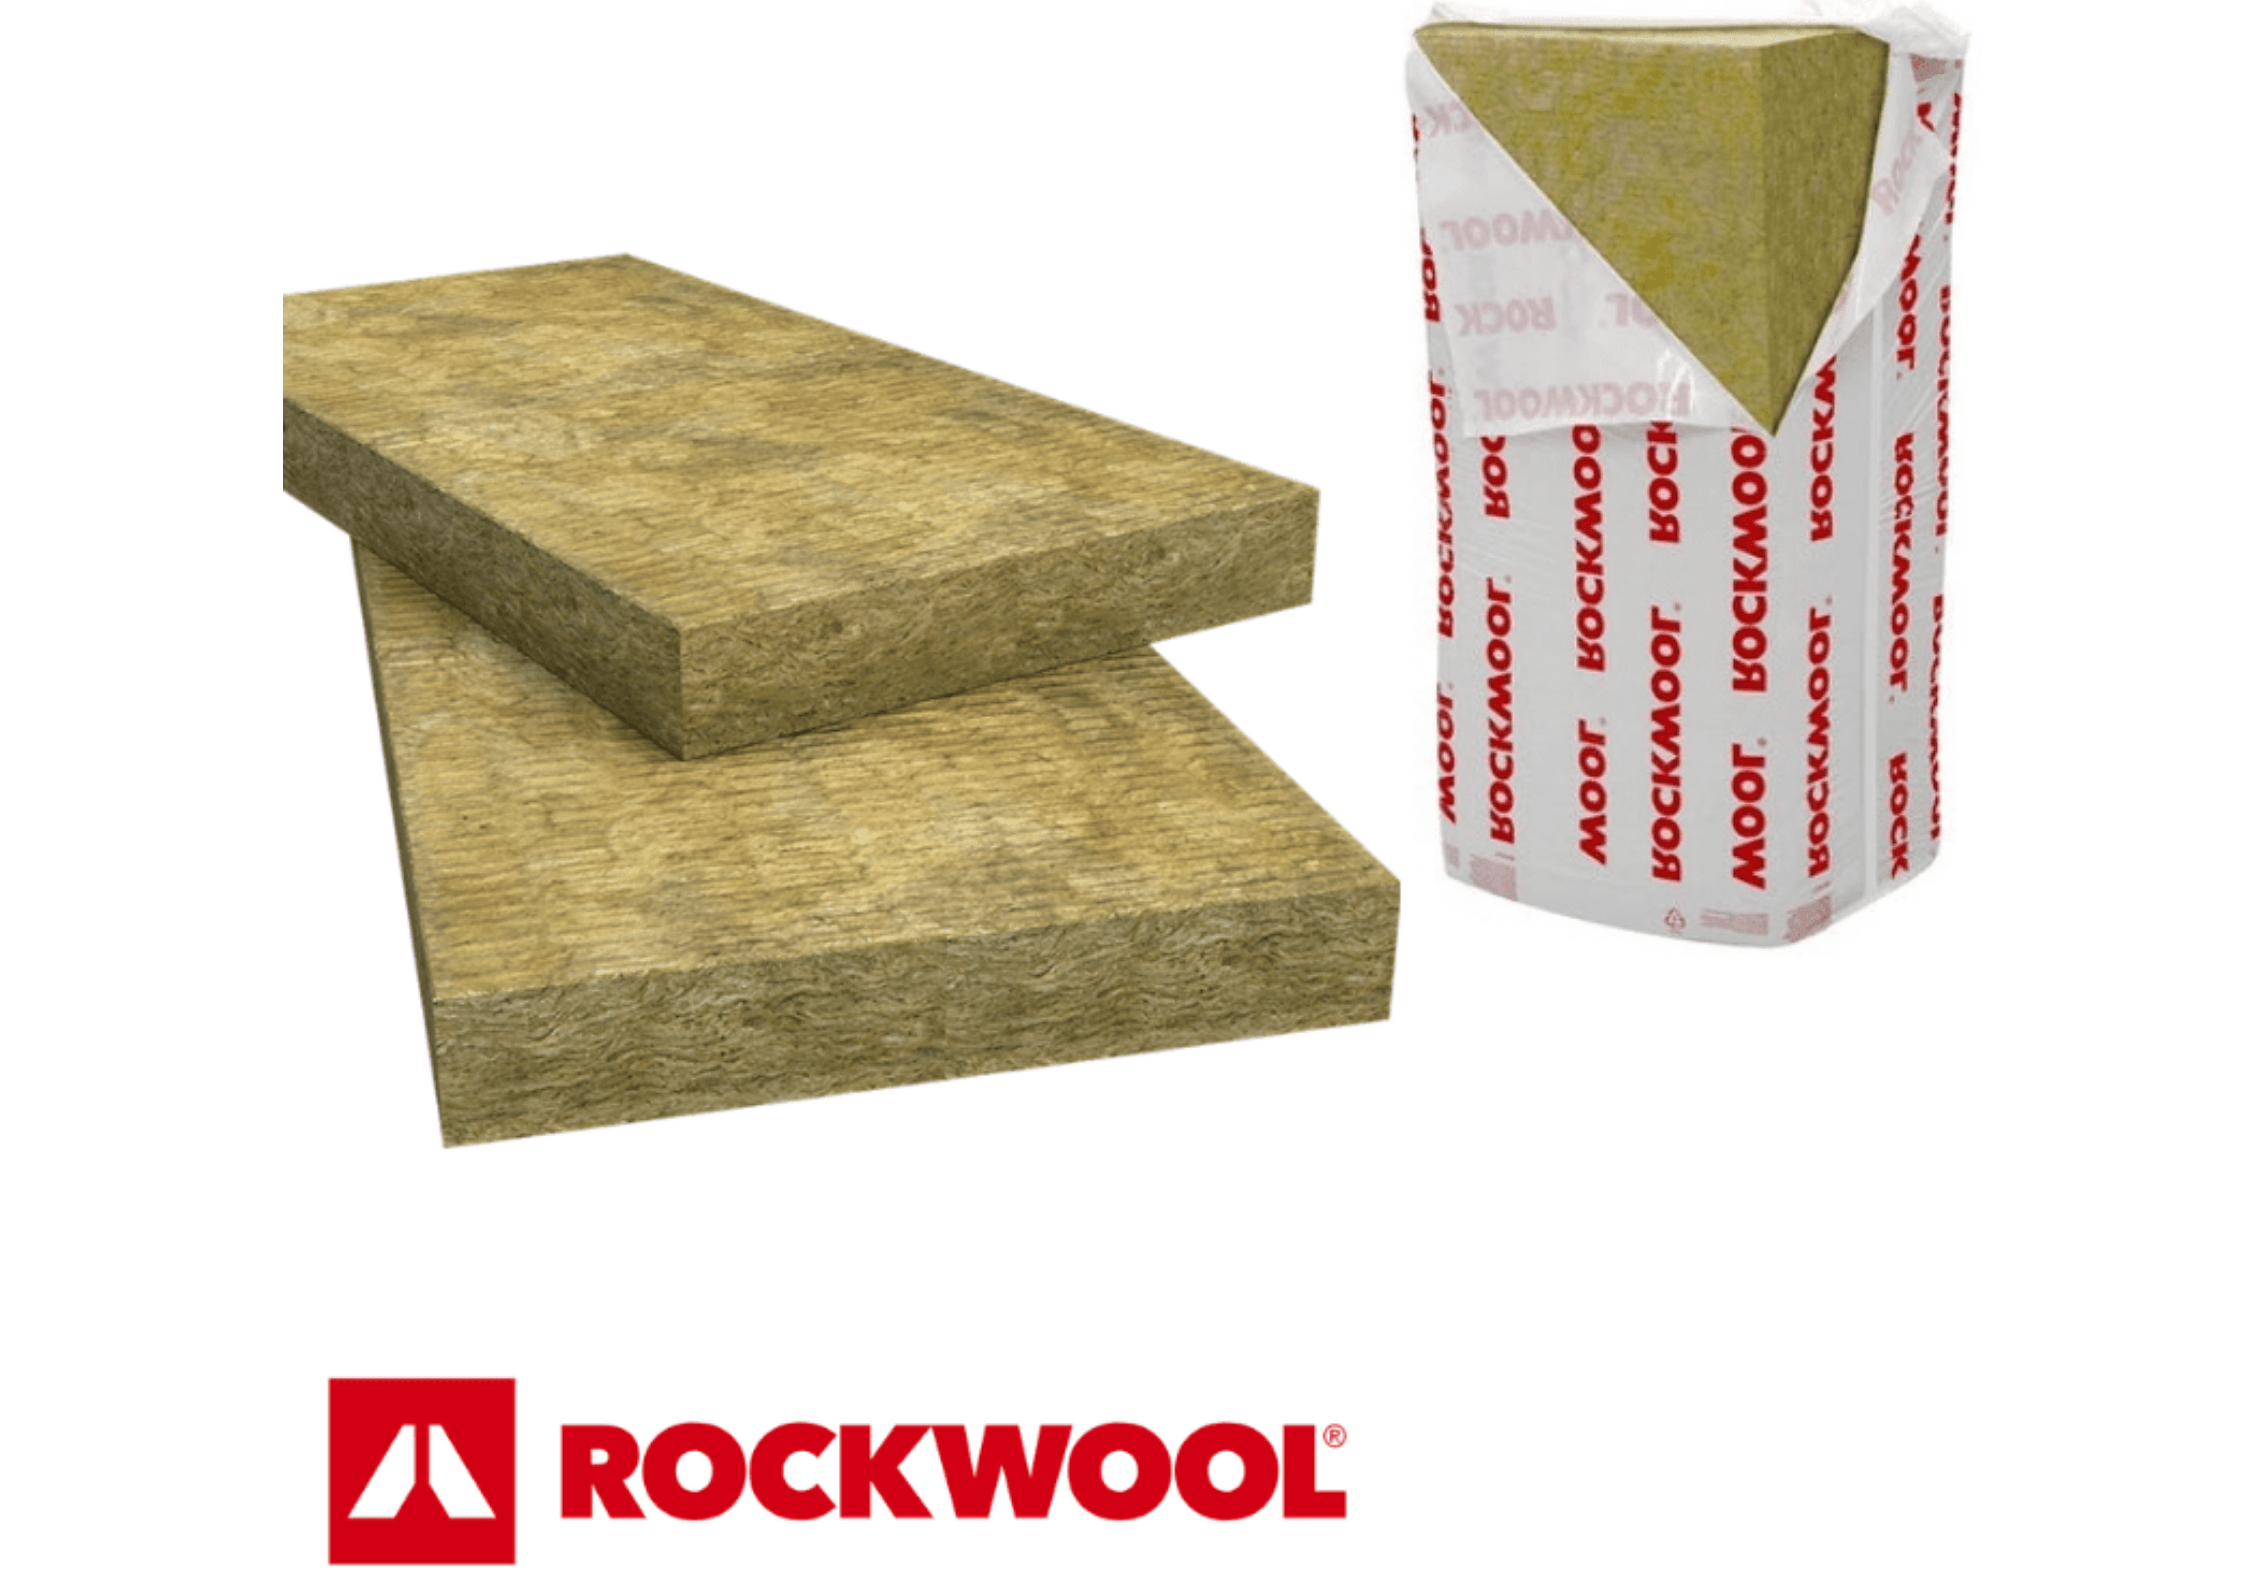 Rockwool Insulation Rockwool RWA45 Acoustic Slab | 1200mm x 600mm x 100mm IUK00889 Rockwool RWA 45 Slab | insulationuk.co.uk